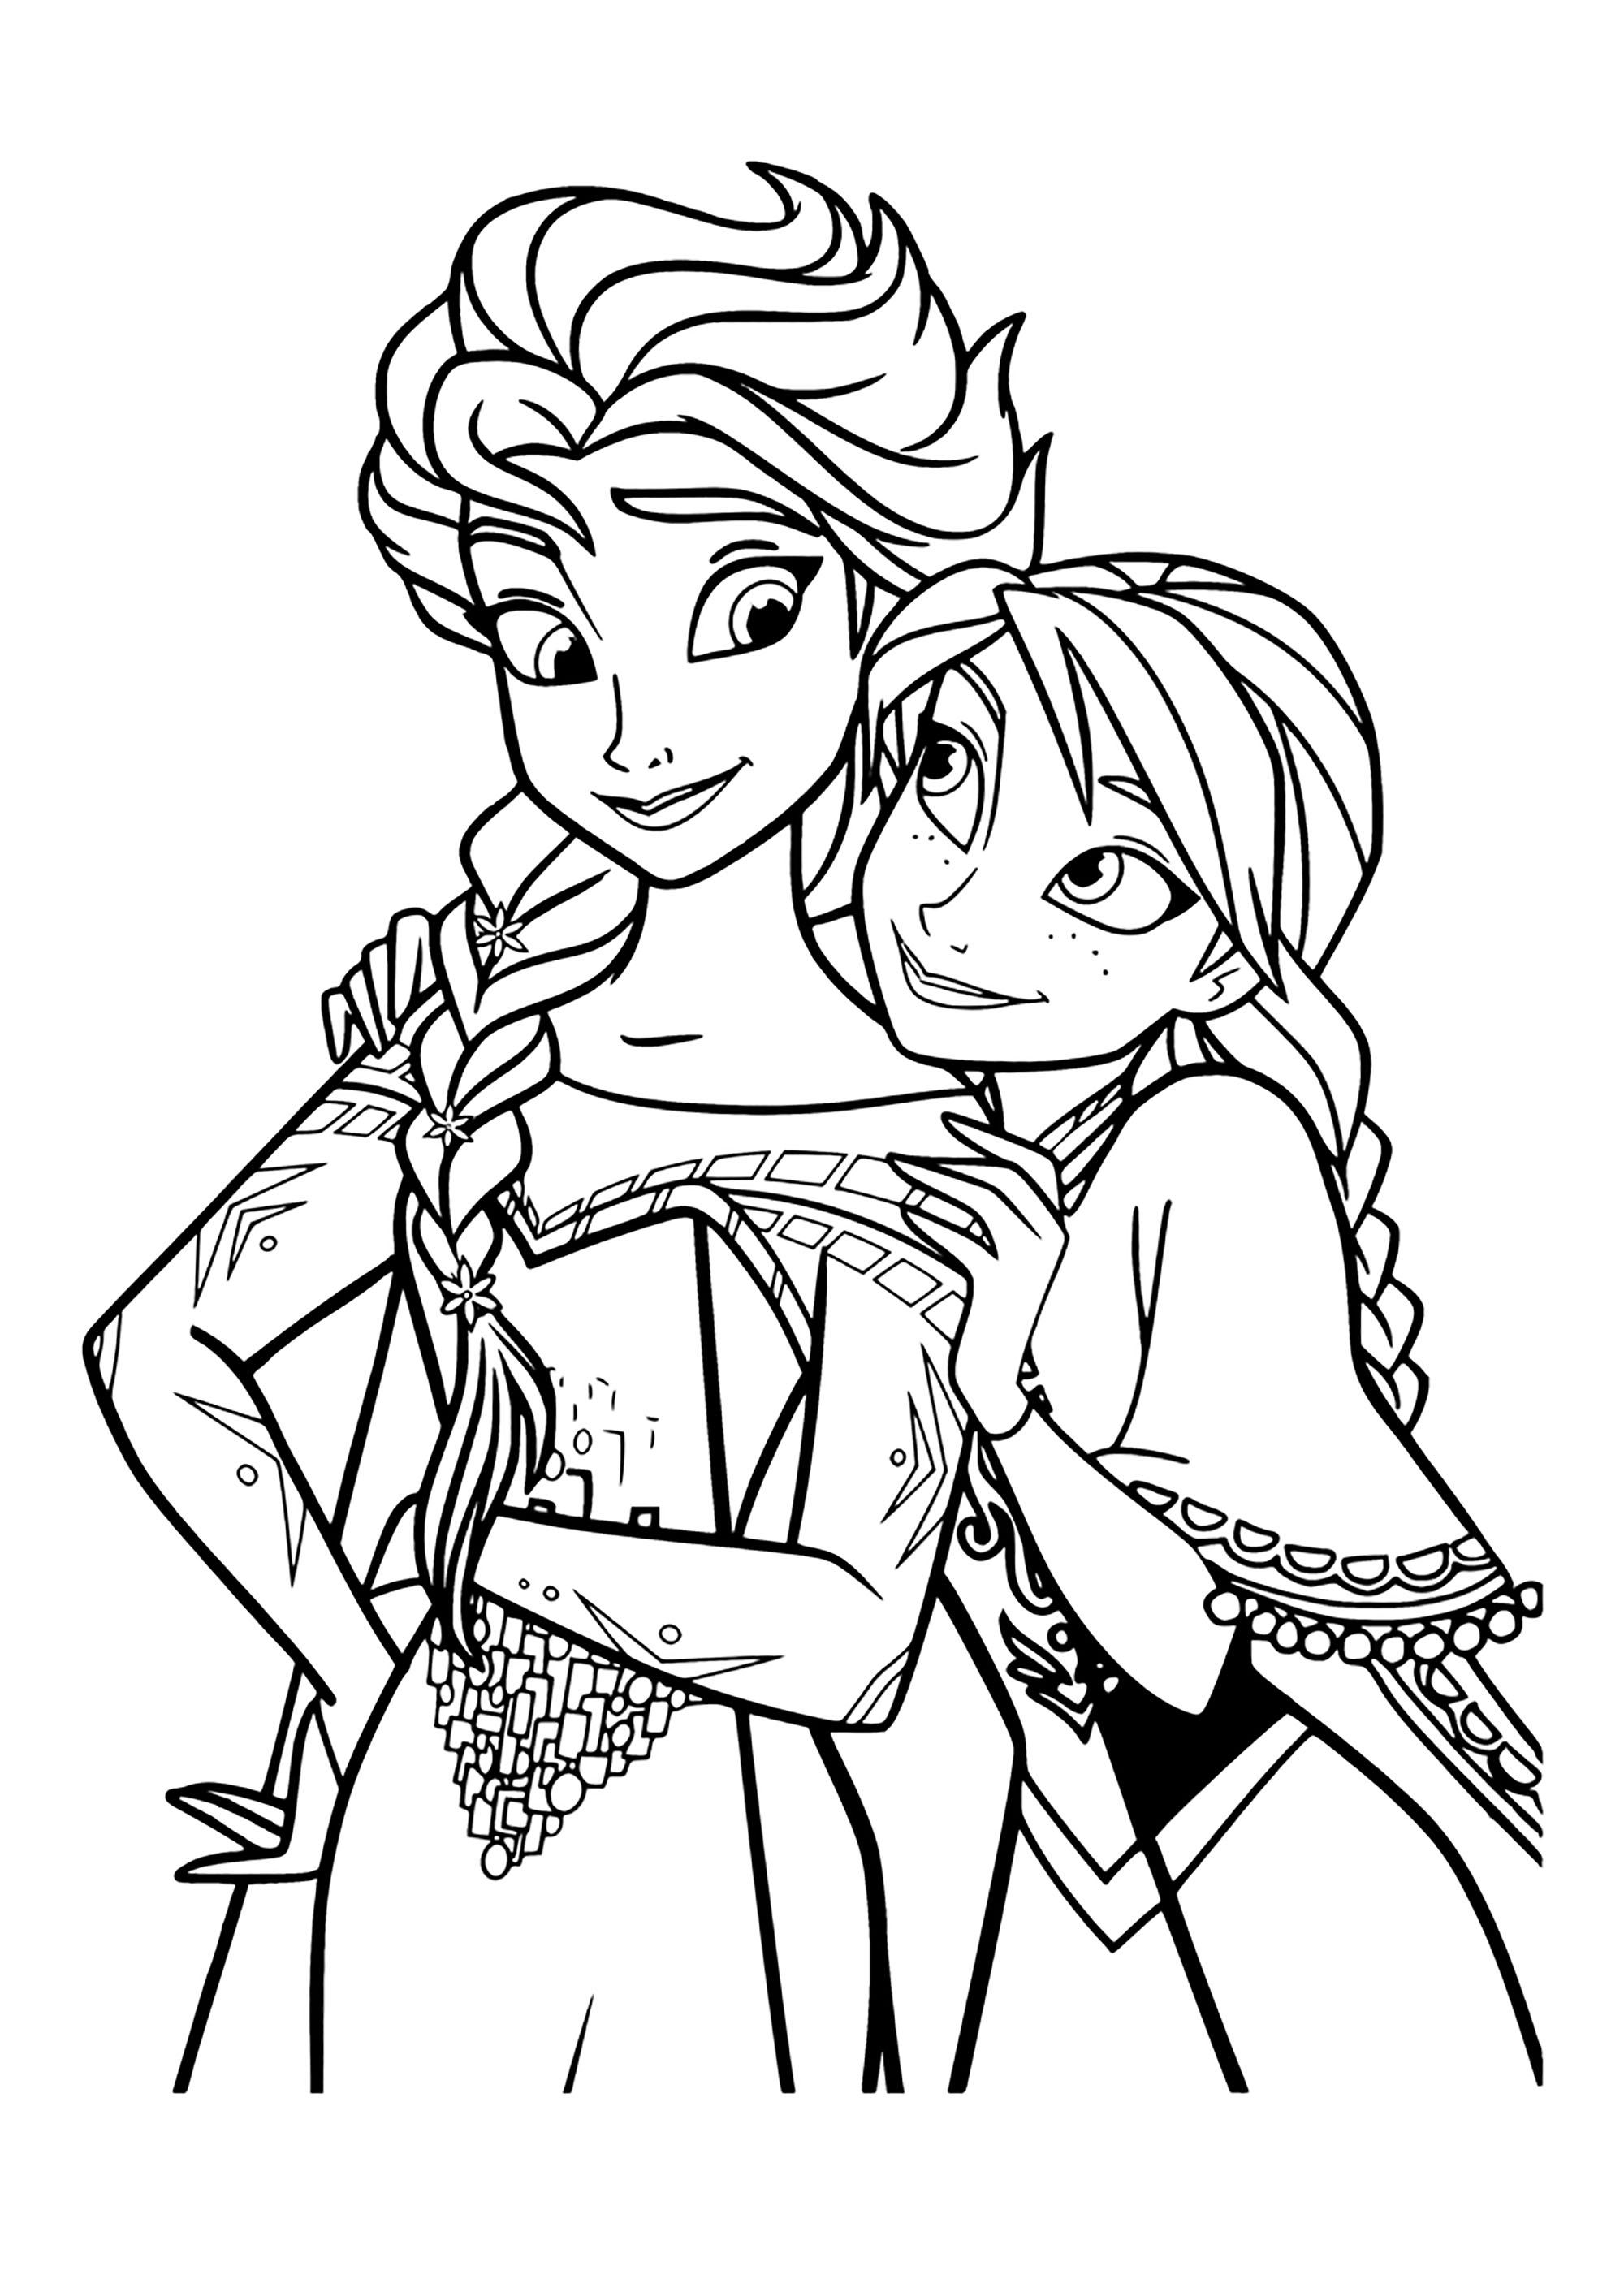 Frozen 2: Anna y Elsa como hermanas íntimas